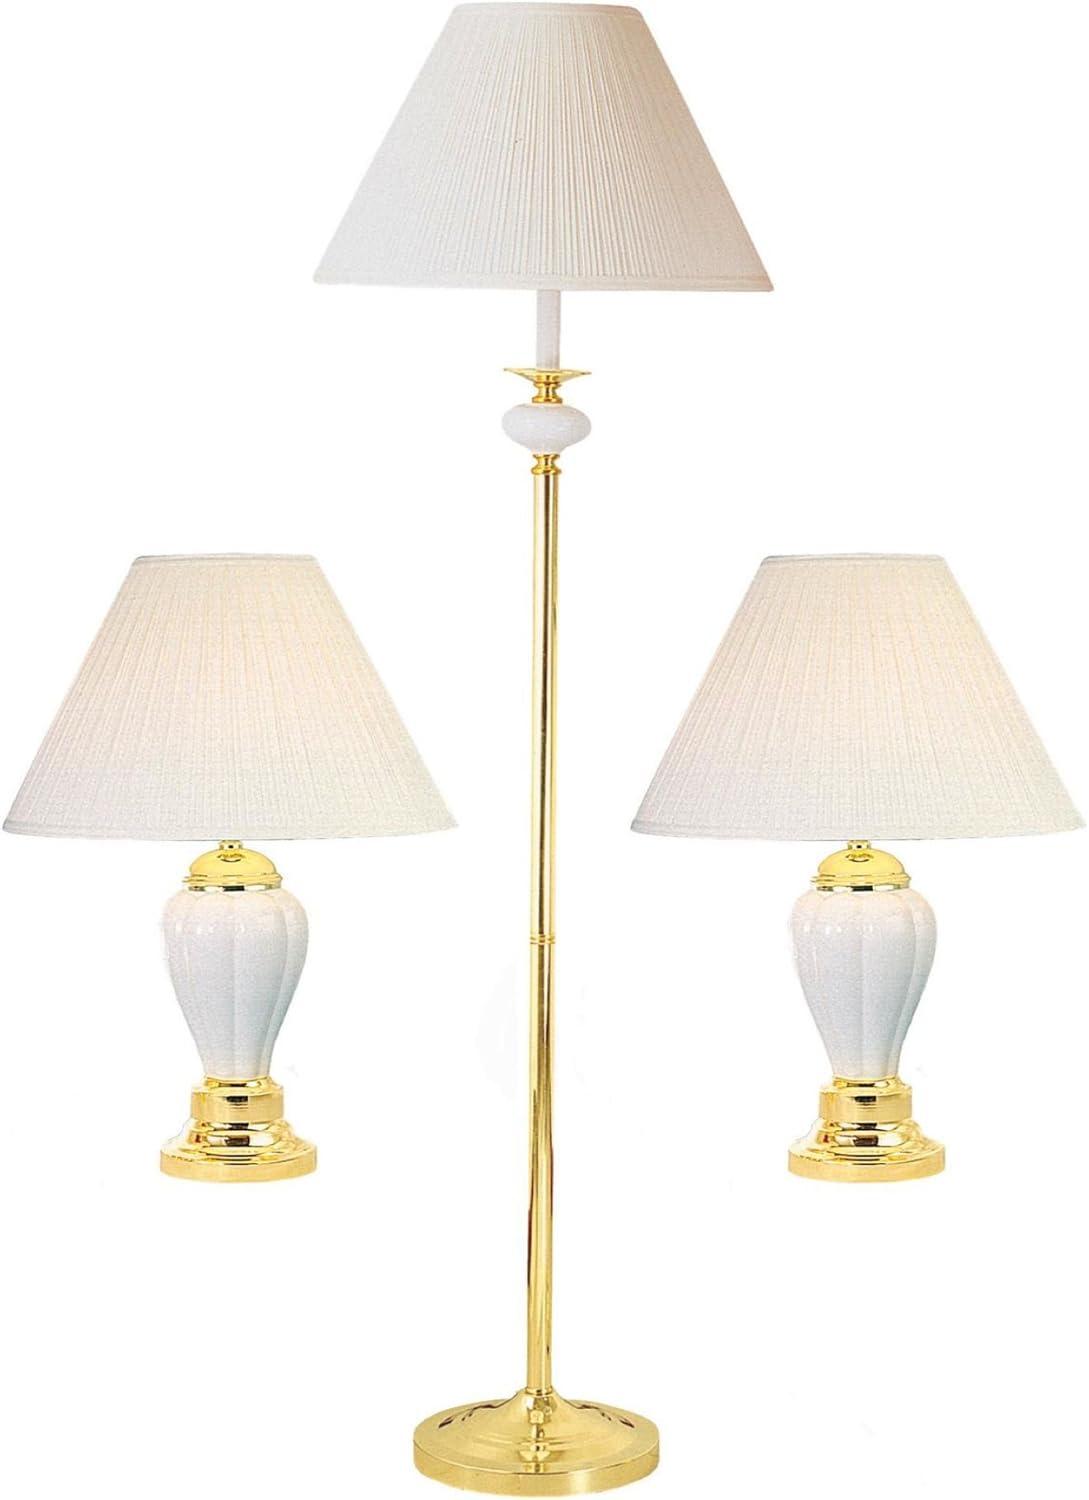 Elegant Gold and Black Ceramic Lamp Set with Polished Finish